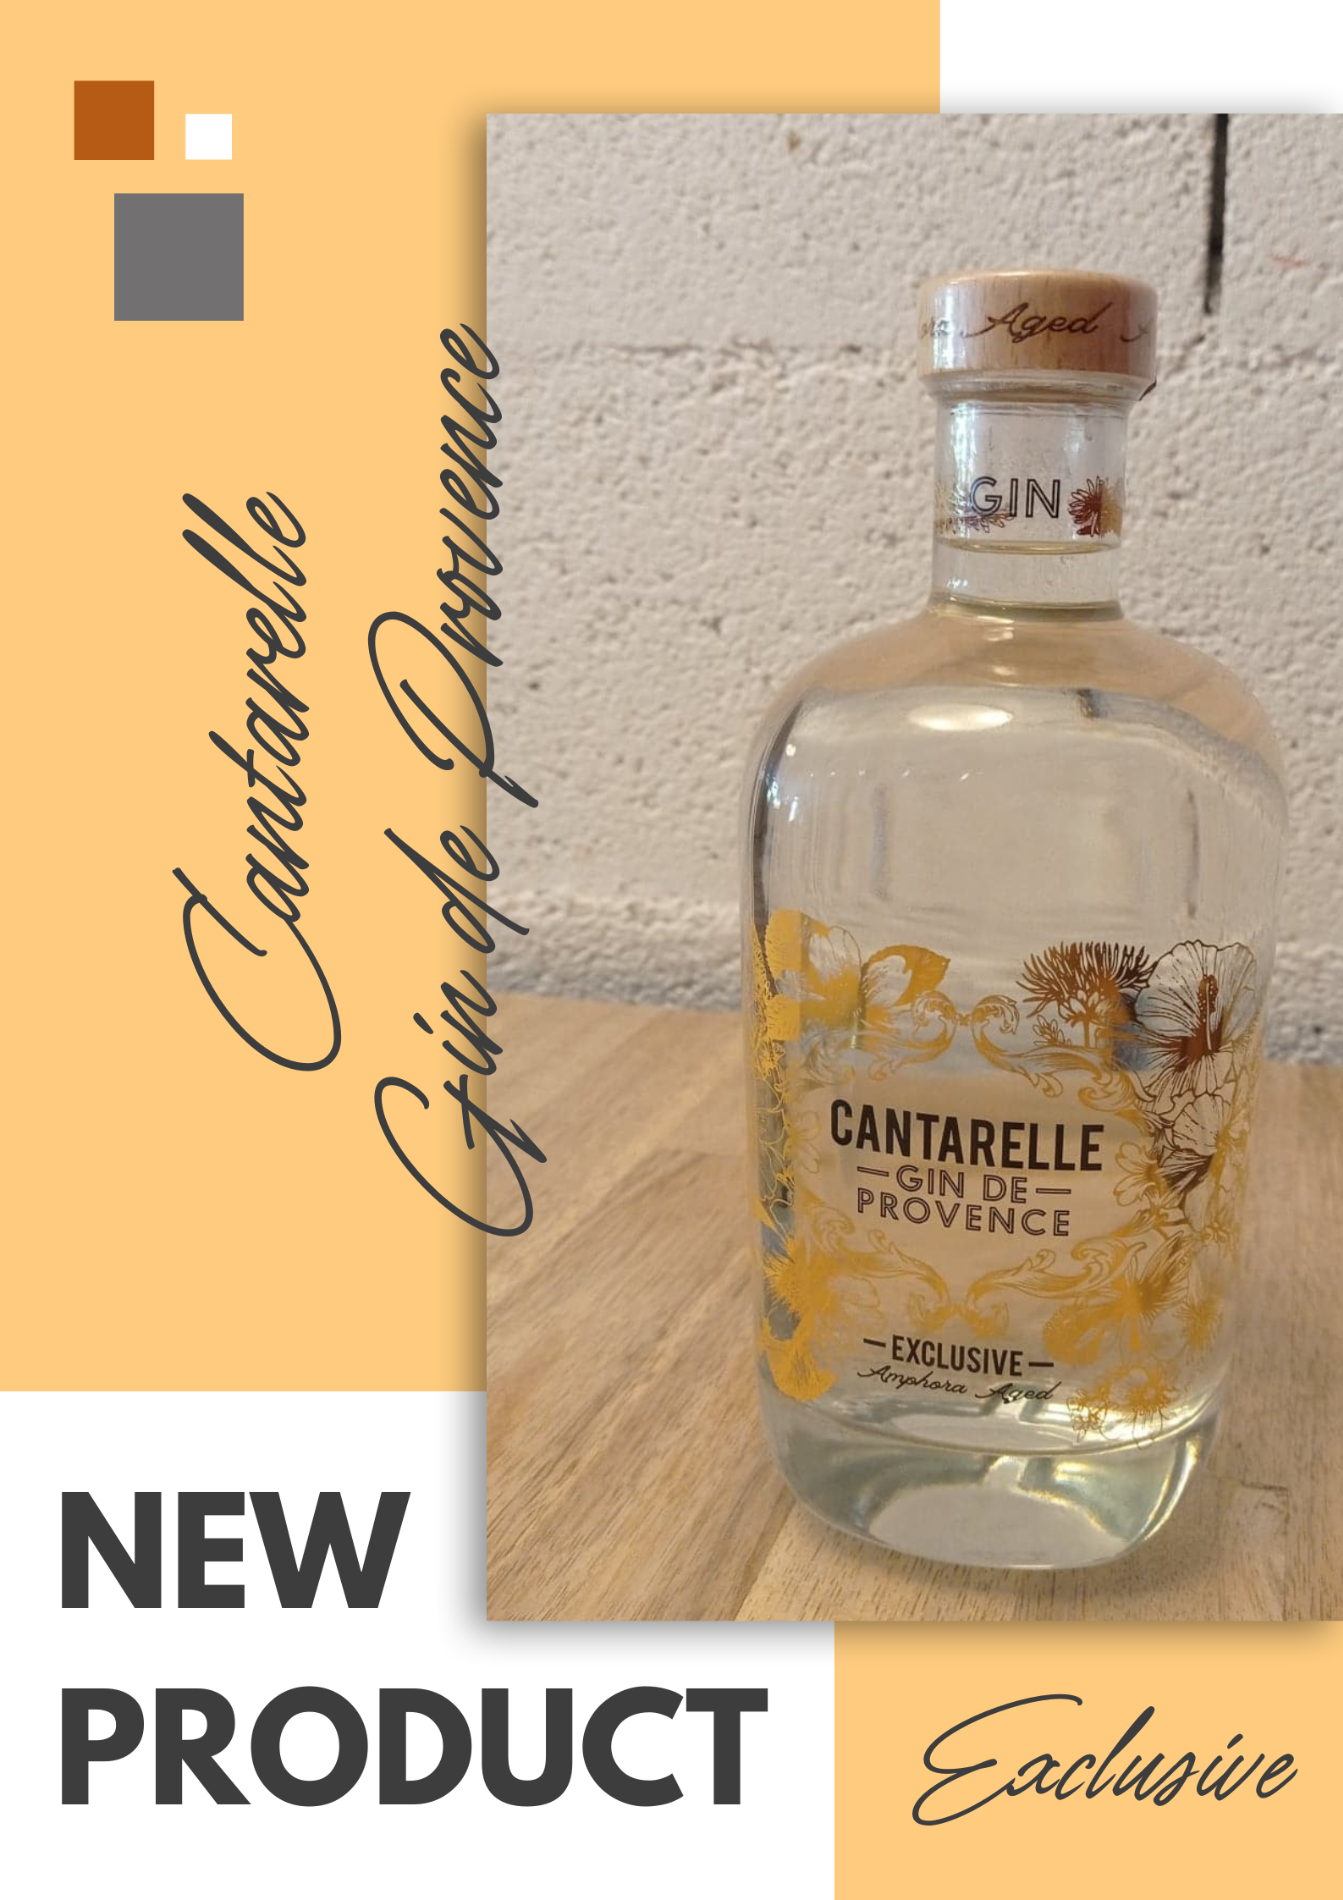 Nouveau gin, Cantarelle